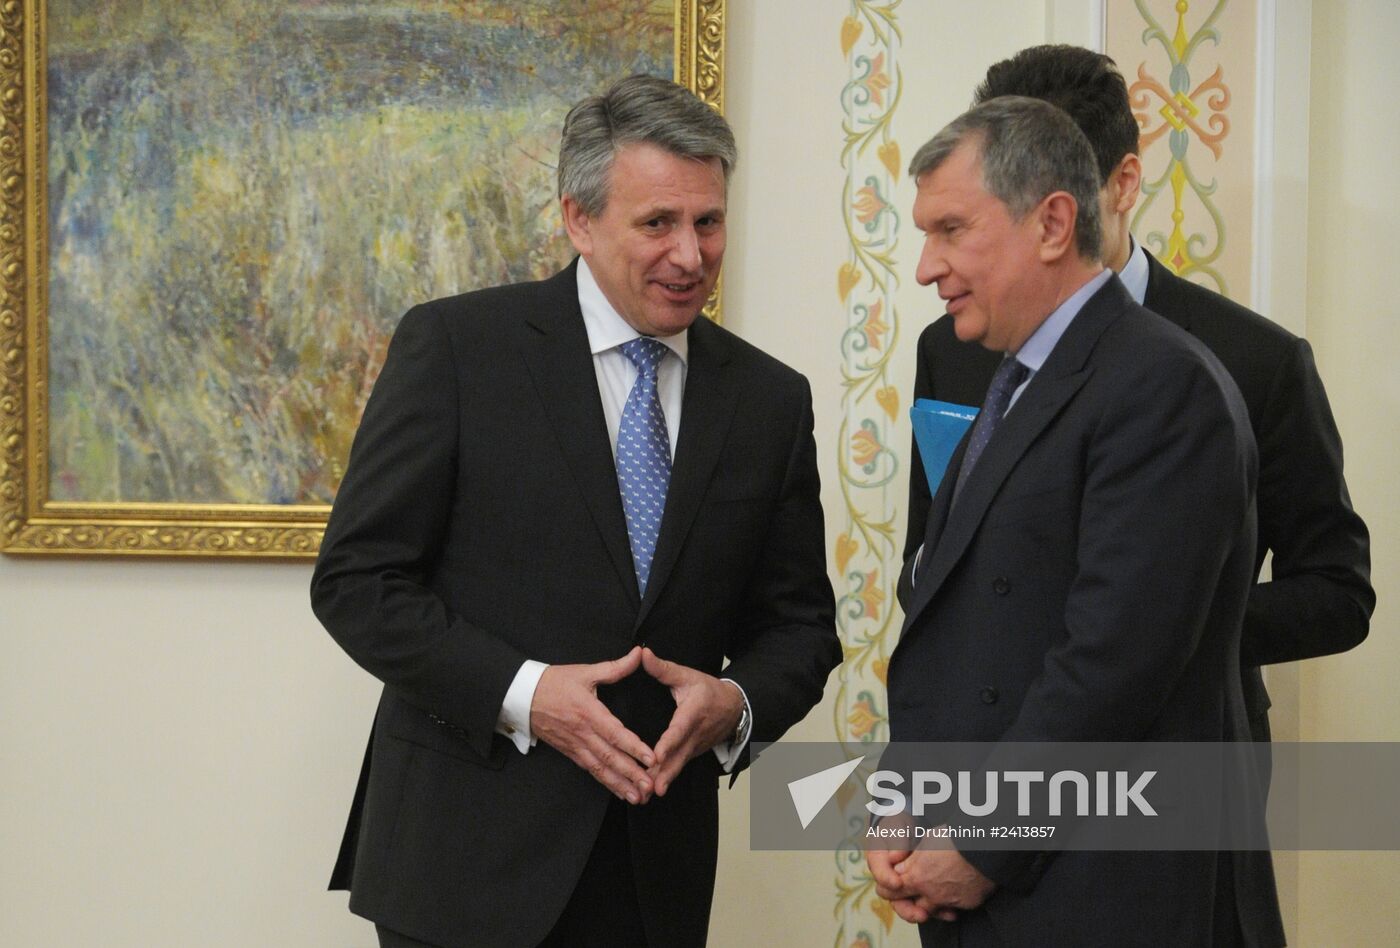 Vladimir Putin meets with Shell CEO Ben van Beurden